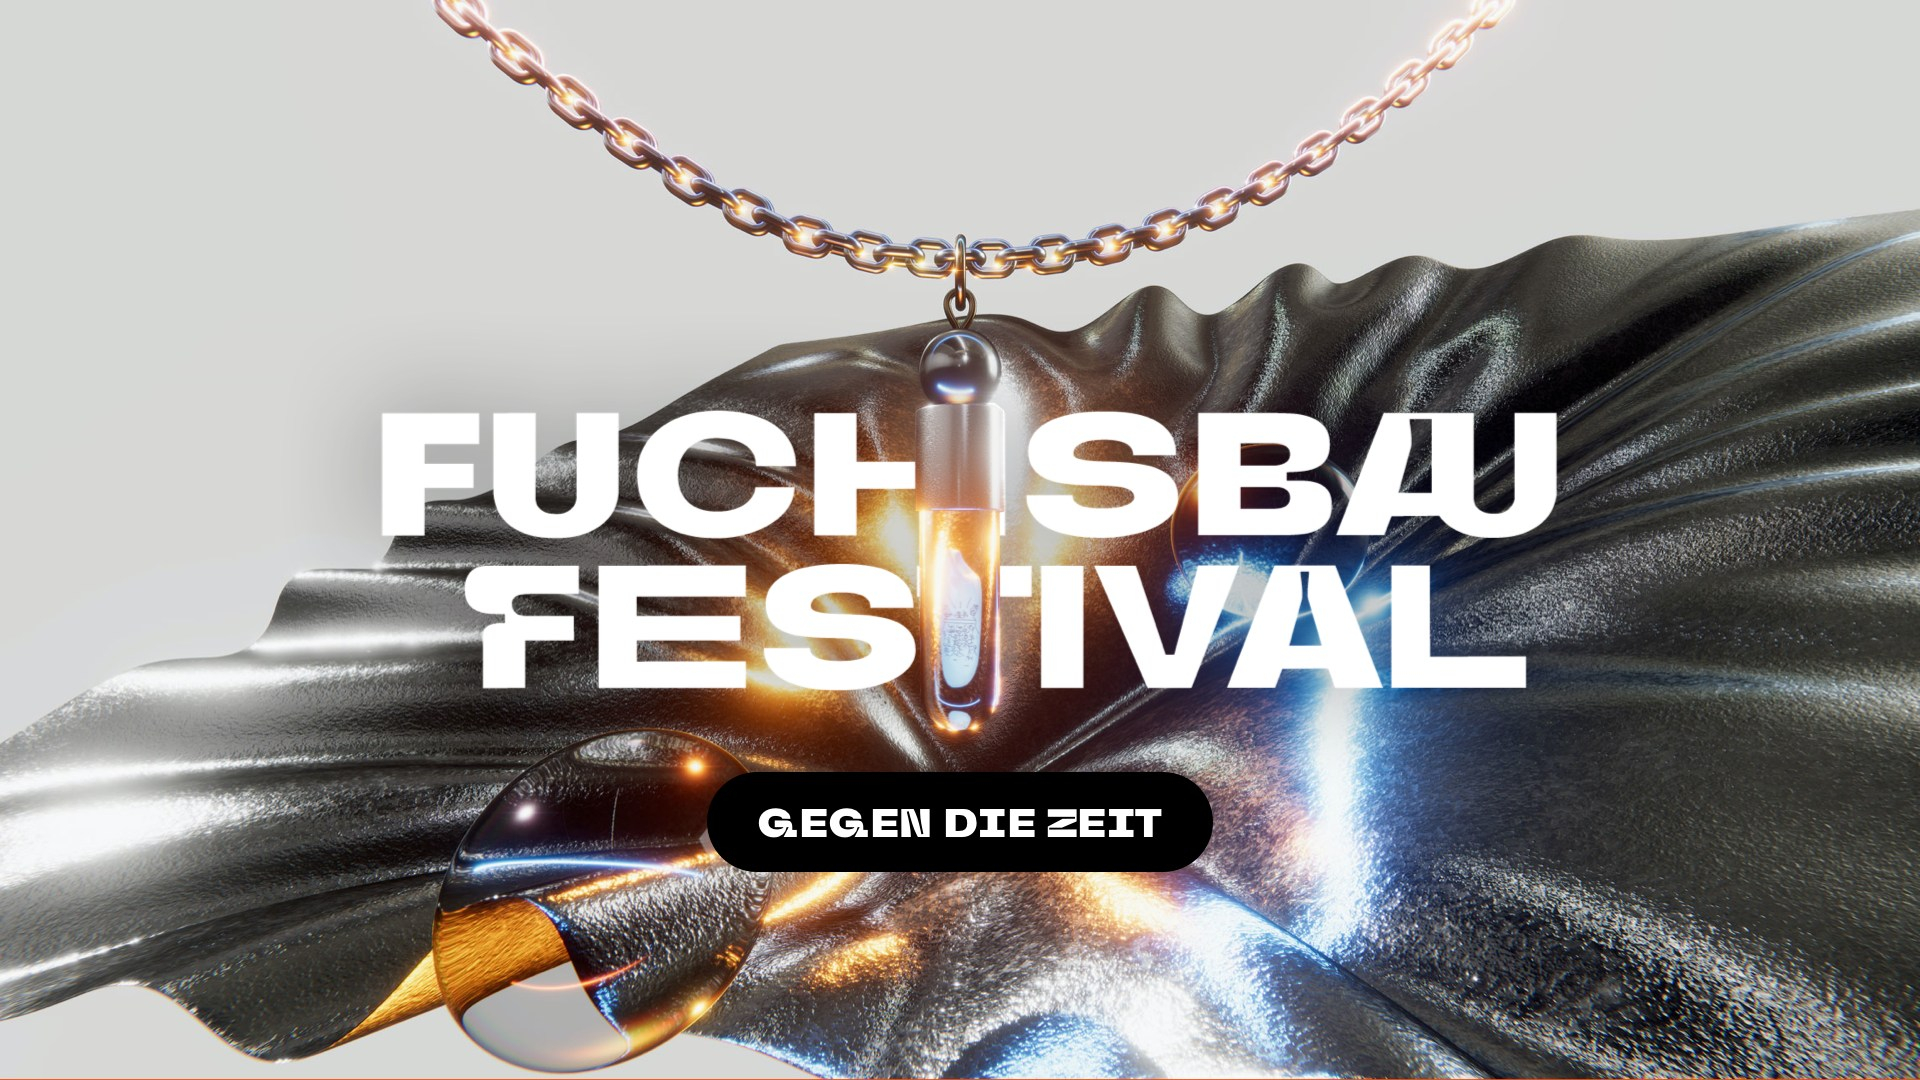 Fuchsbau Festival 2022 x Gegen die Zeit - Flyer front